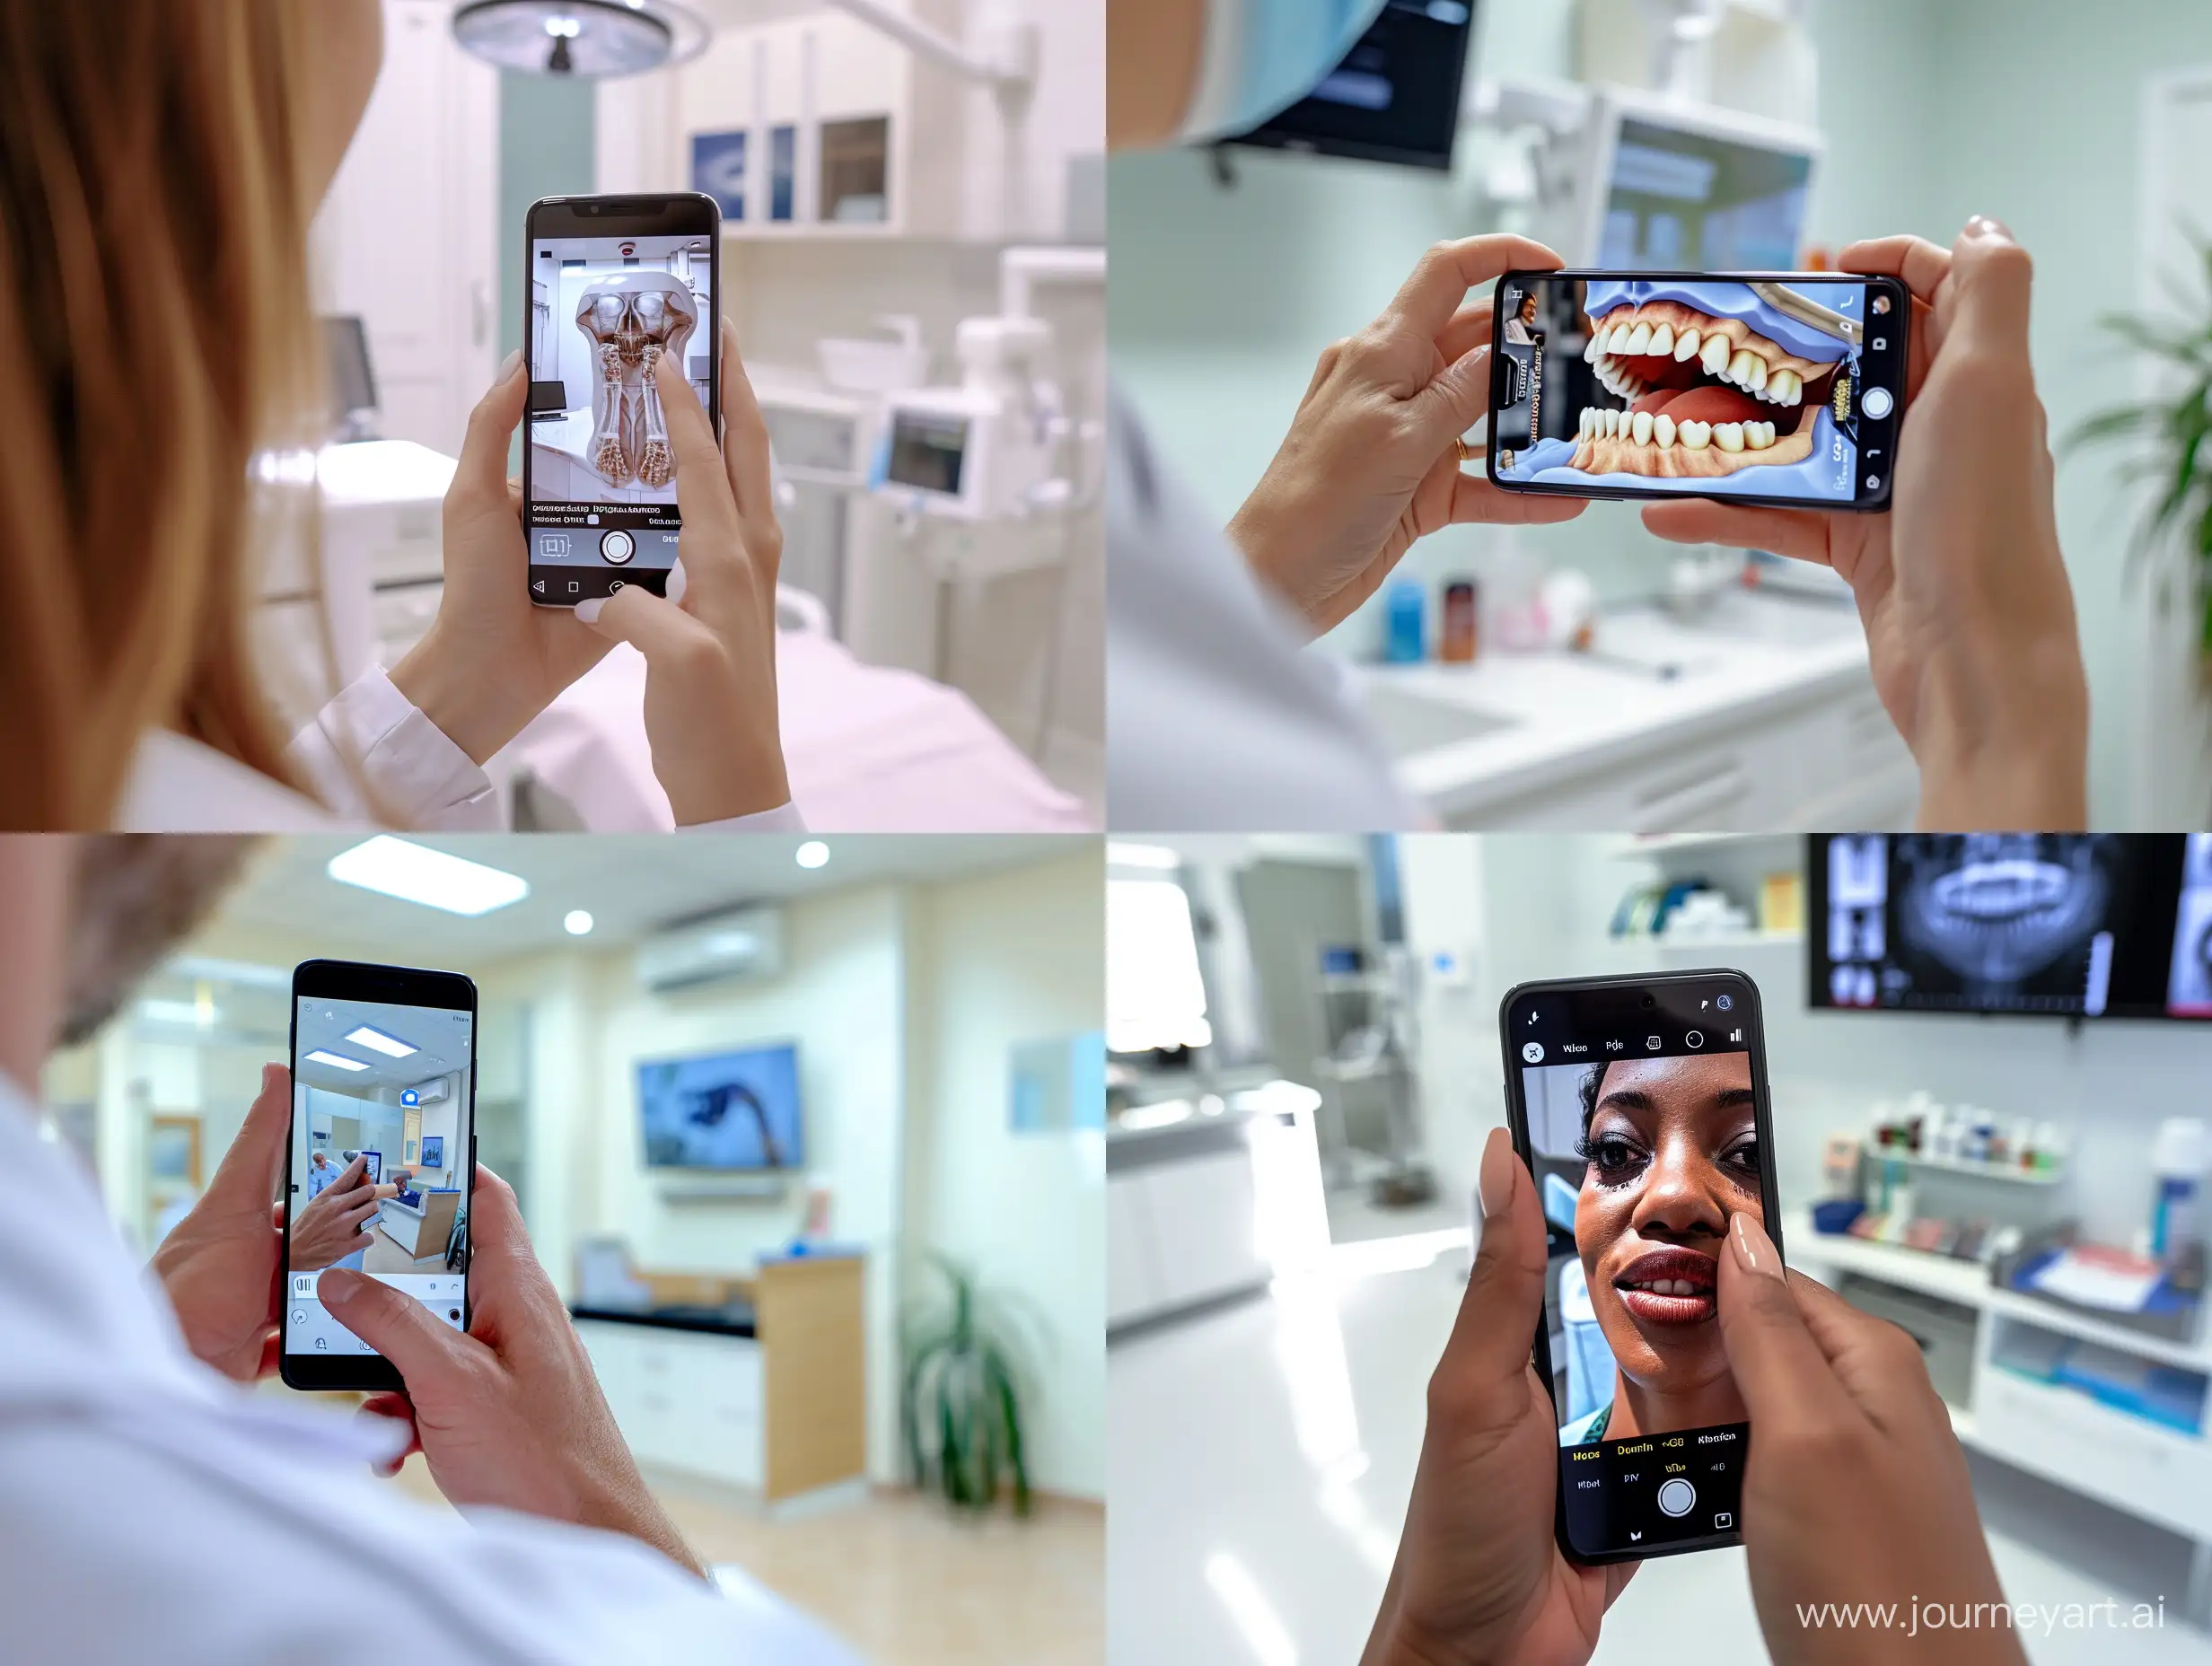 пациент записывается на прием в клинику через приложение на мобильном телефоне, фотореализм, фотография, детализация, 